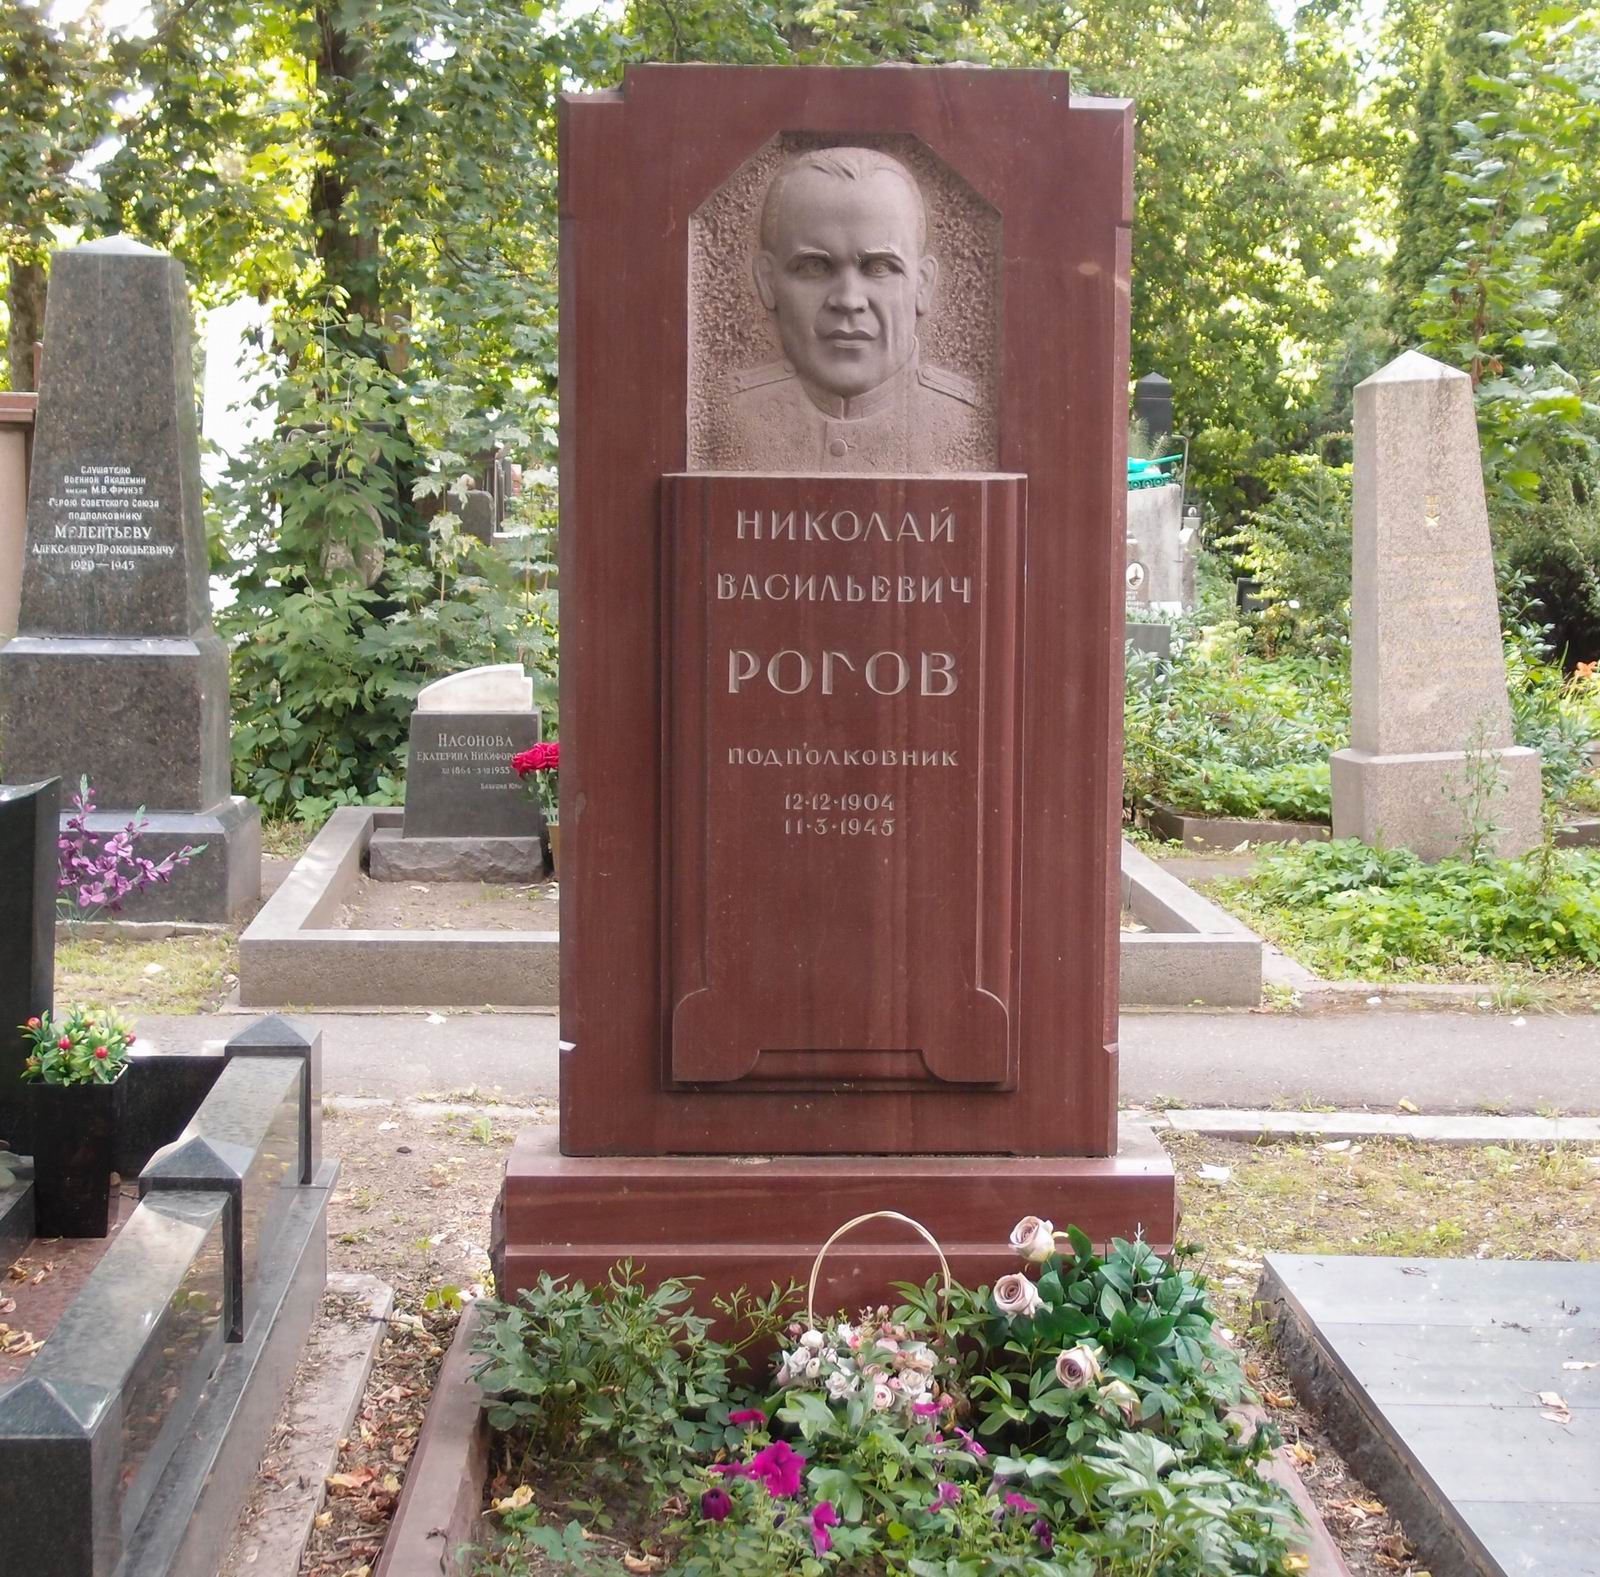 Памятник на могиле Рогова Н.В. (1888–1942), ск. С.Меркуров, на Новодевичьем кладбище (4–9–15).